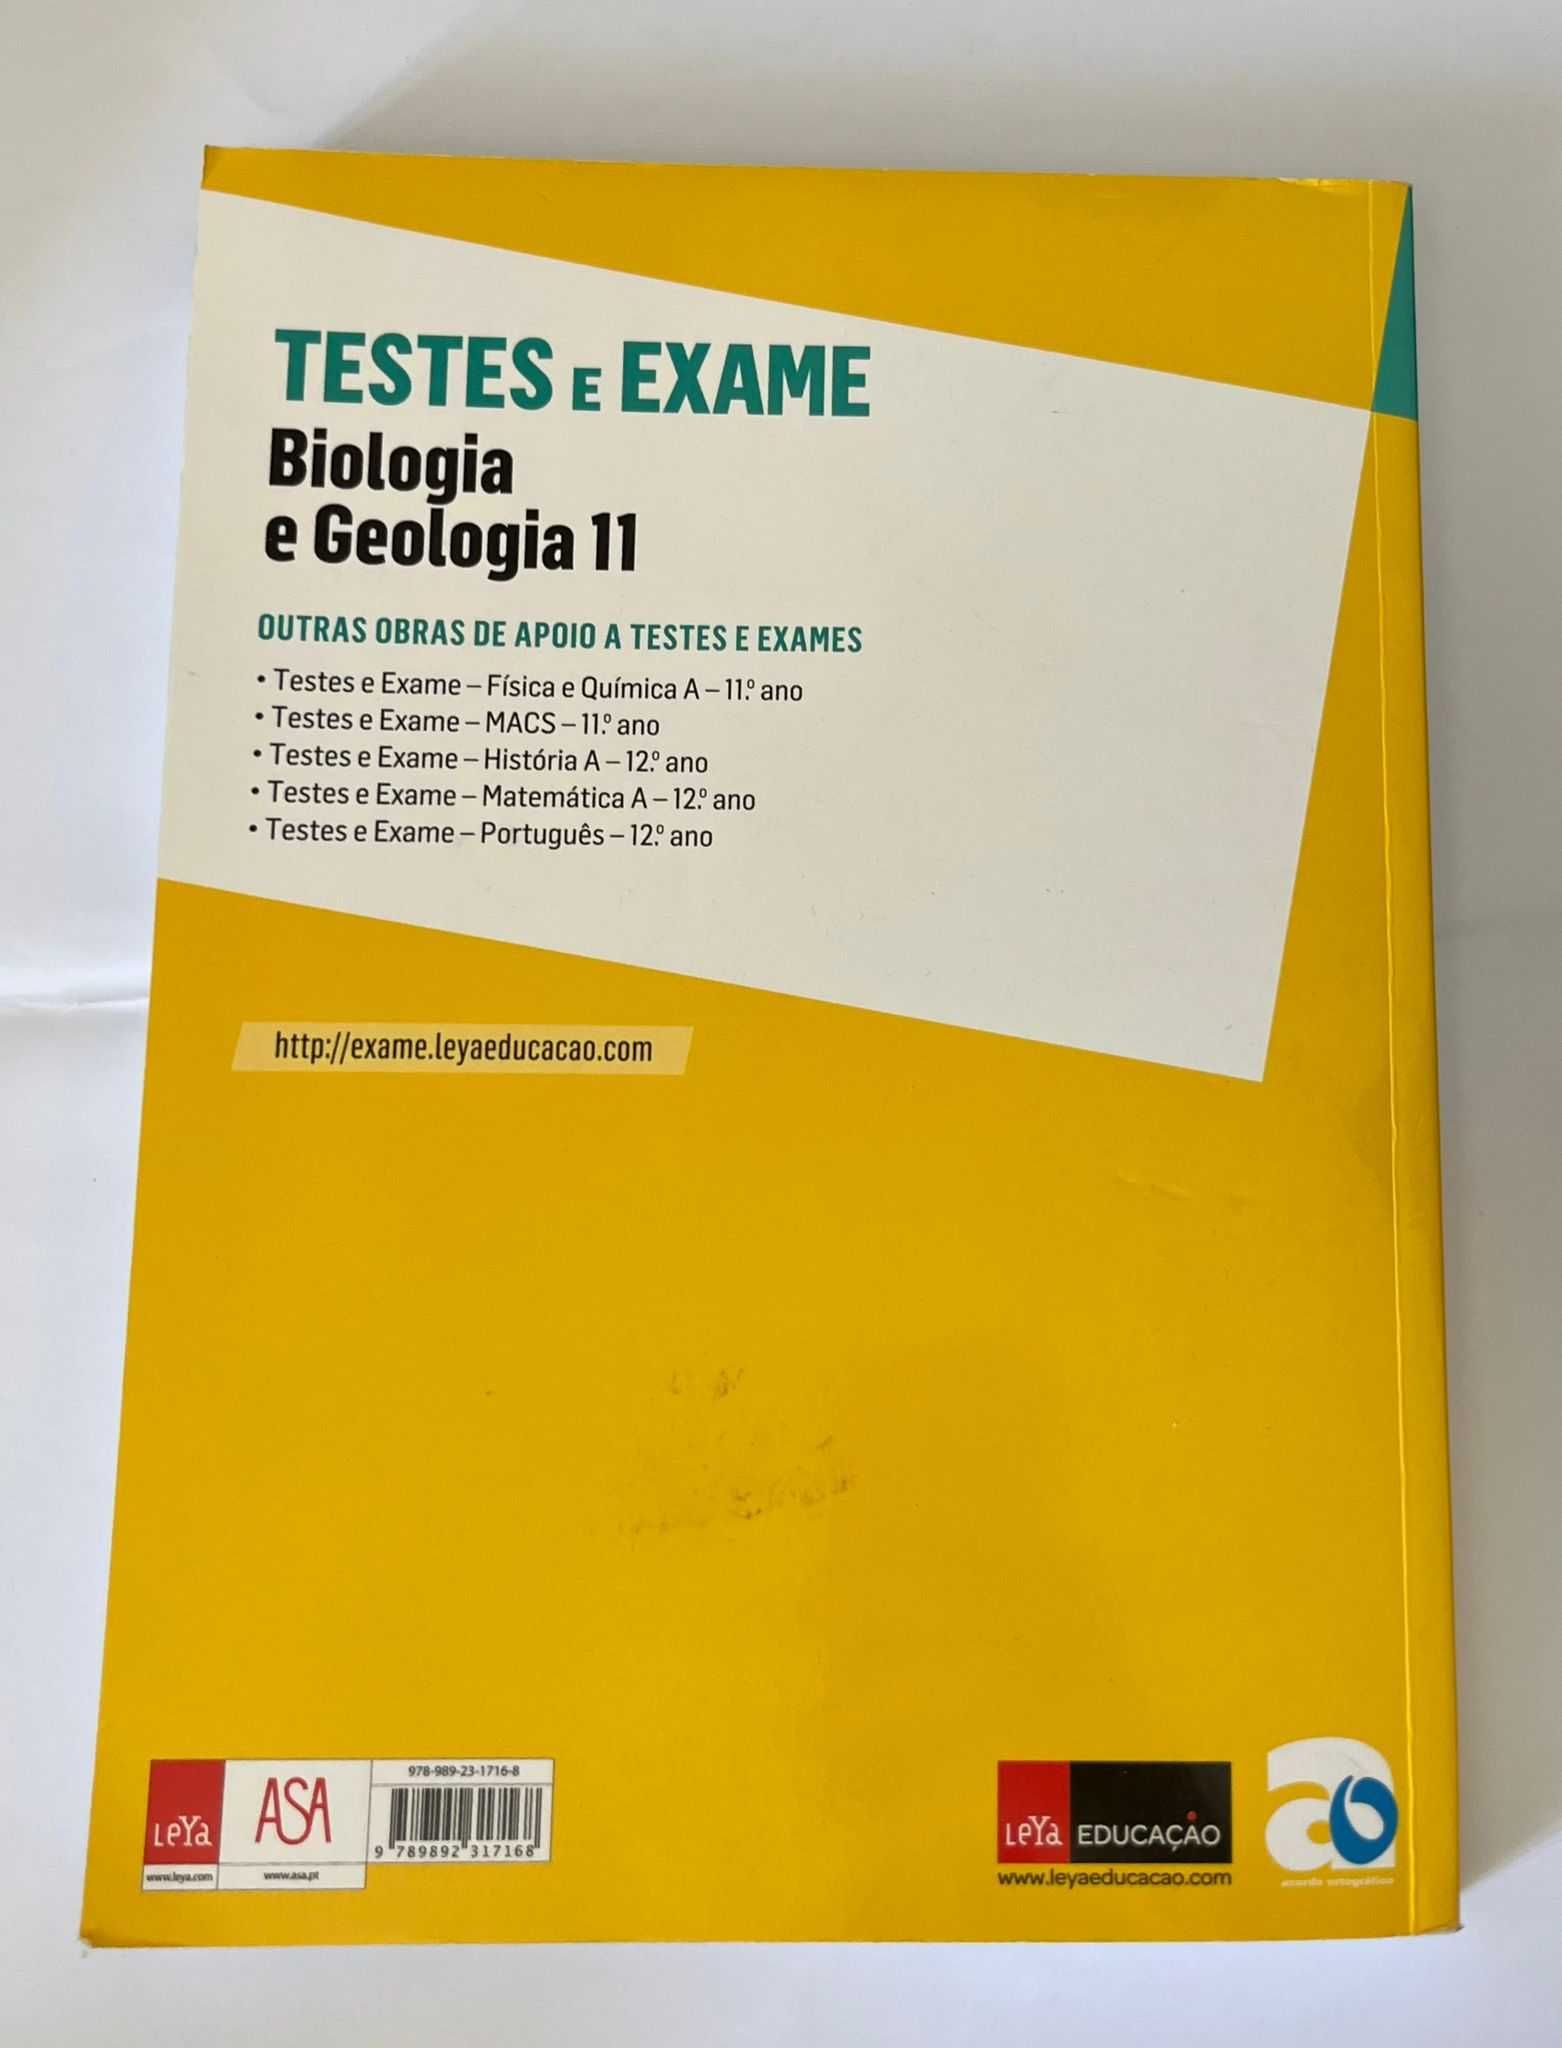 Testes e Exame 11º ano Biologia e Geologia  (ASA)